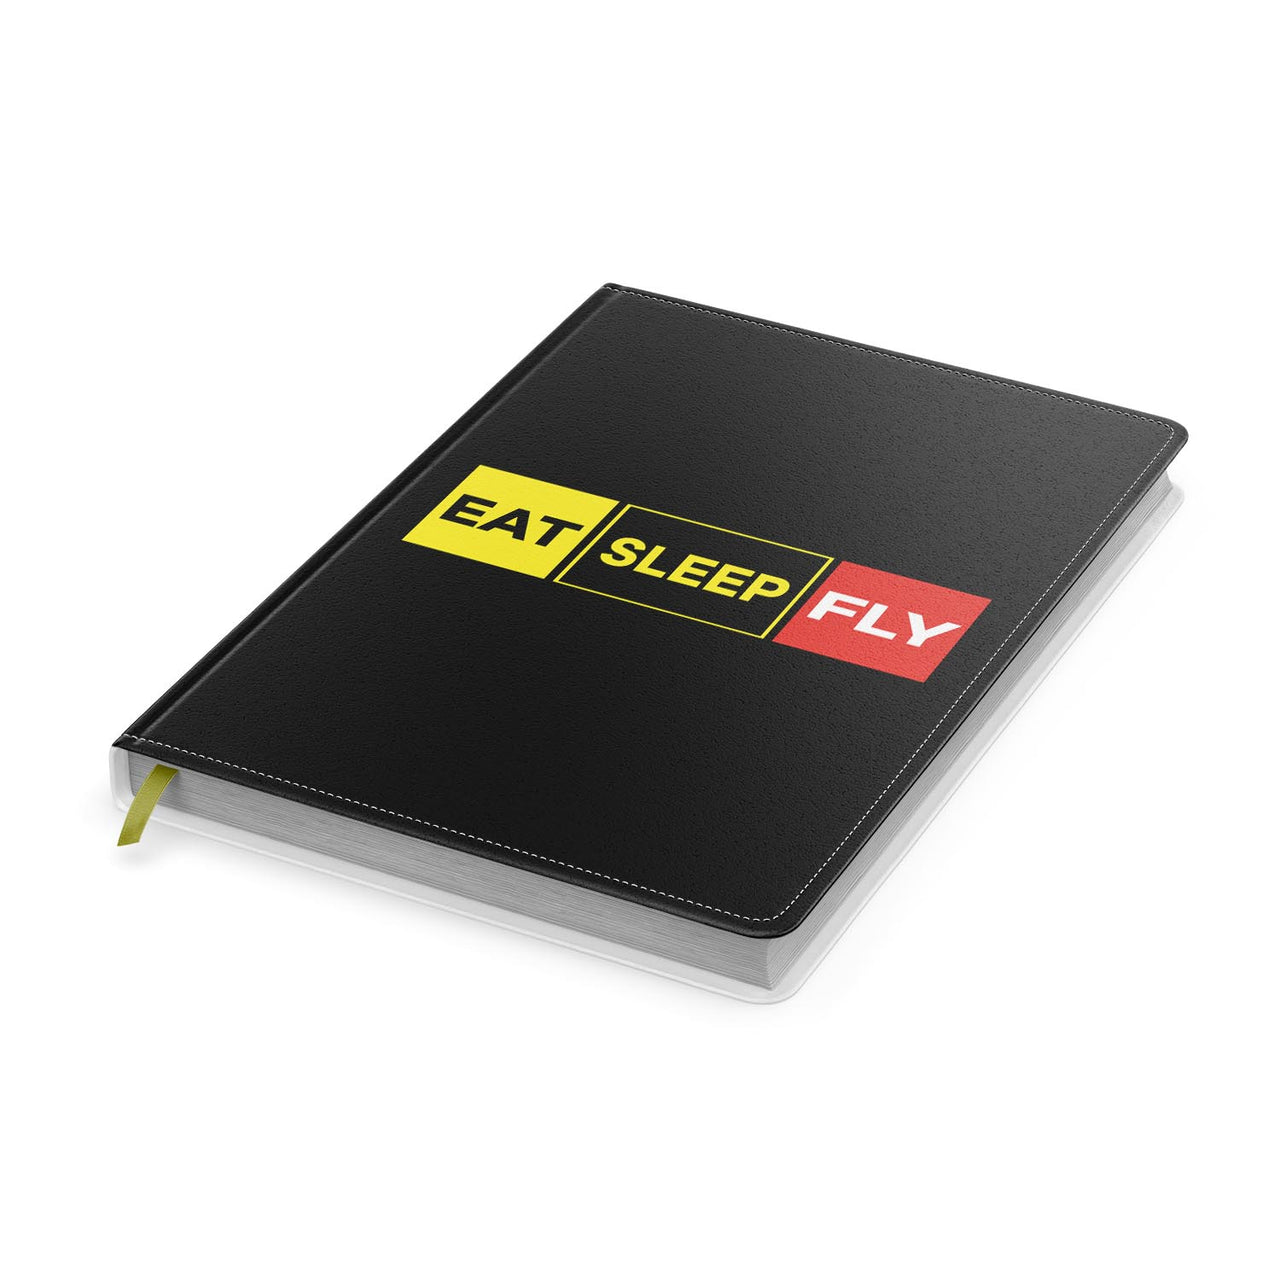 Eat Sleep Fly (Colourful) Designed Notebooks